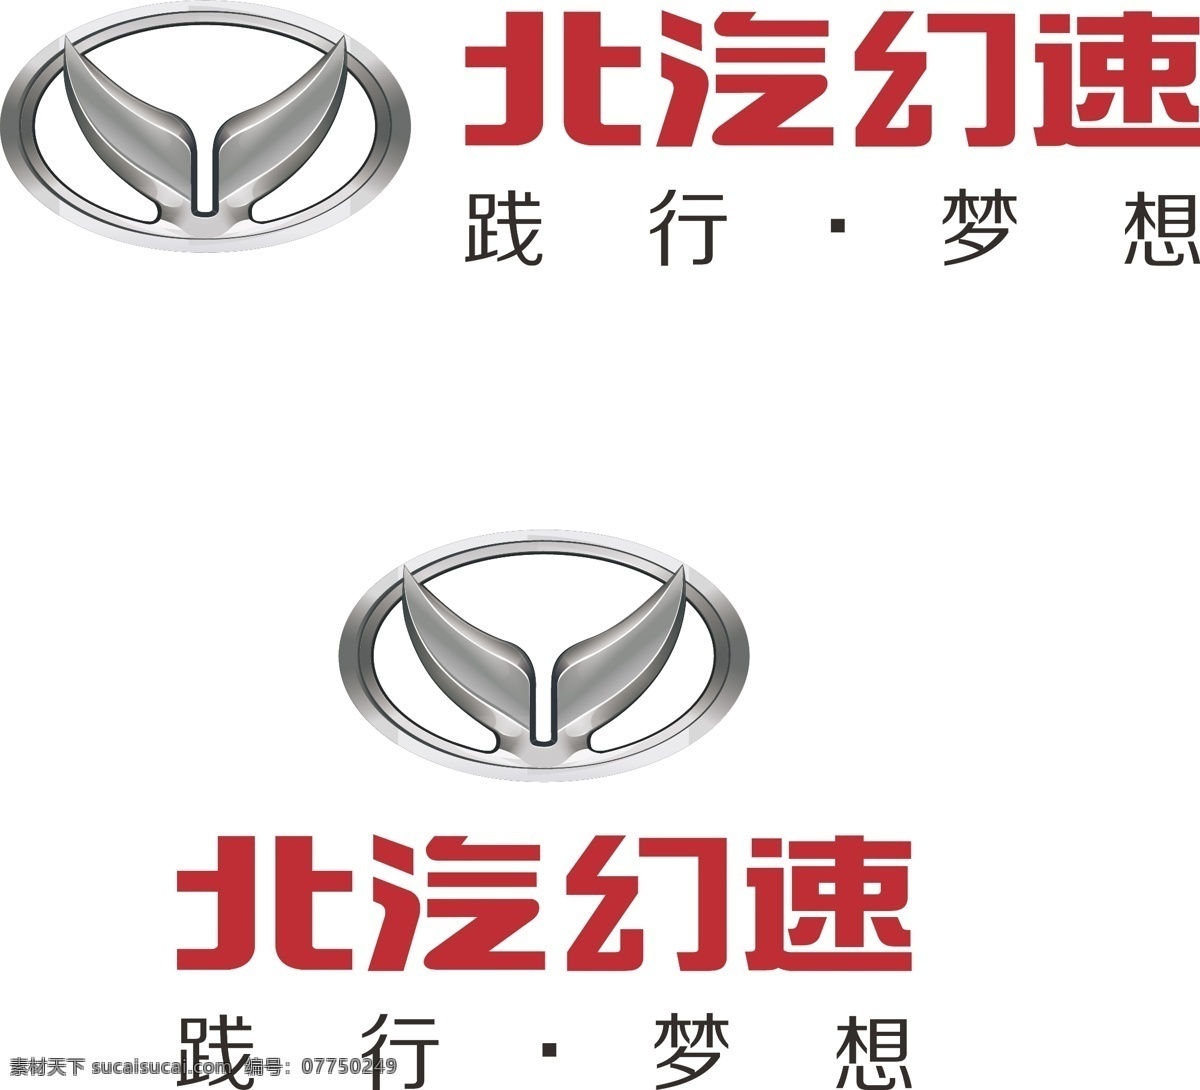 北汽 幻速 厂家 logo 高清 logo设计